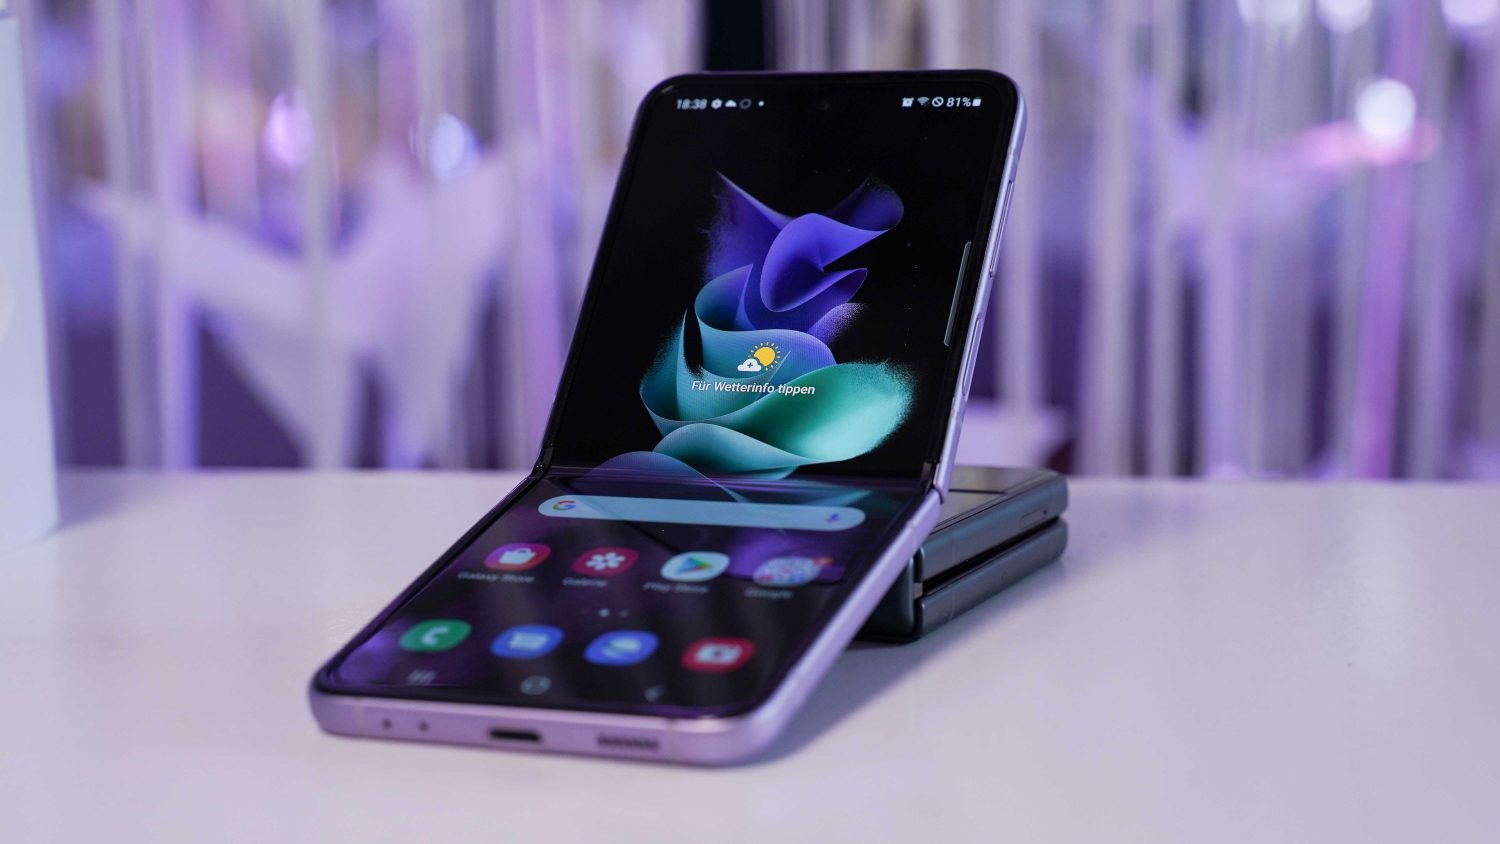 Samsung Galaxy Z Flip 3 2023